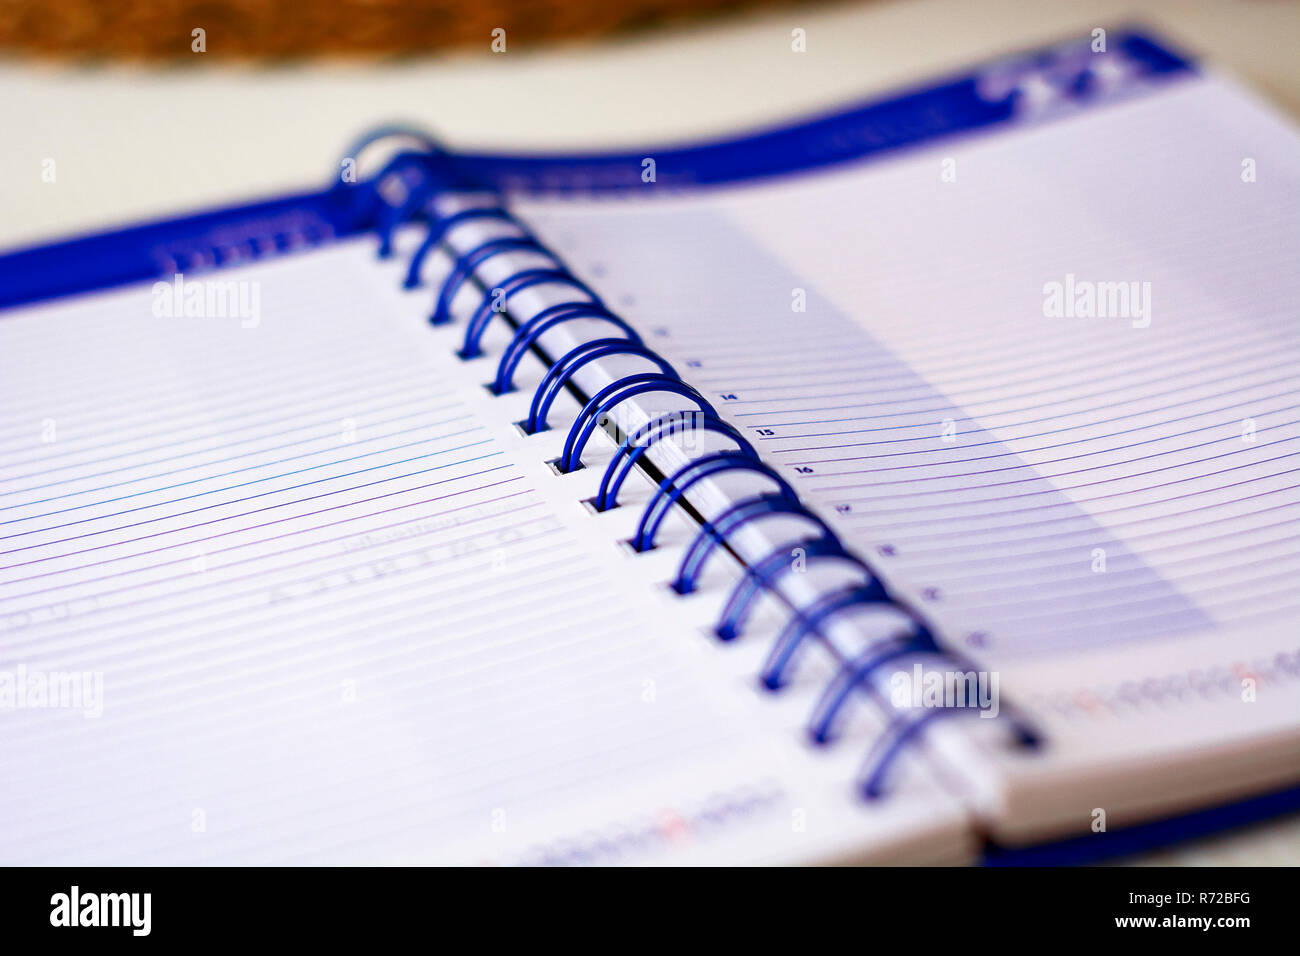 Spirale Notebook mit gefütterter Blätter öffnen wichtige Termine des Tages zu schreiben. Wirtschaft und Produktivität Konzept. Schreibwaren Objekt. Stockfoto